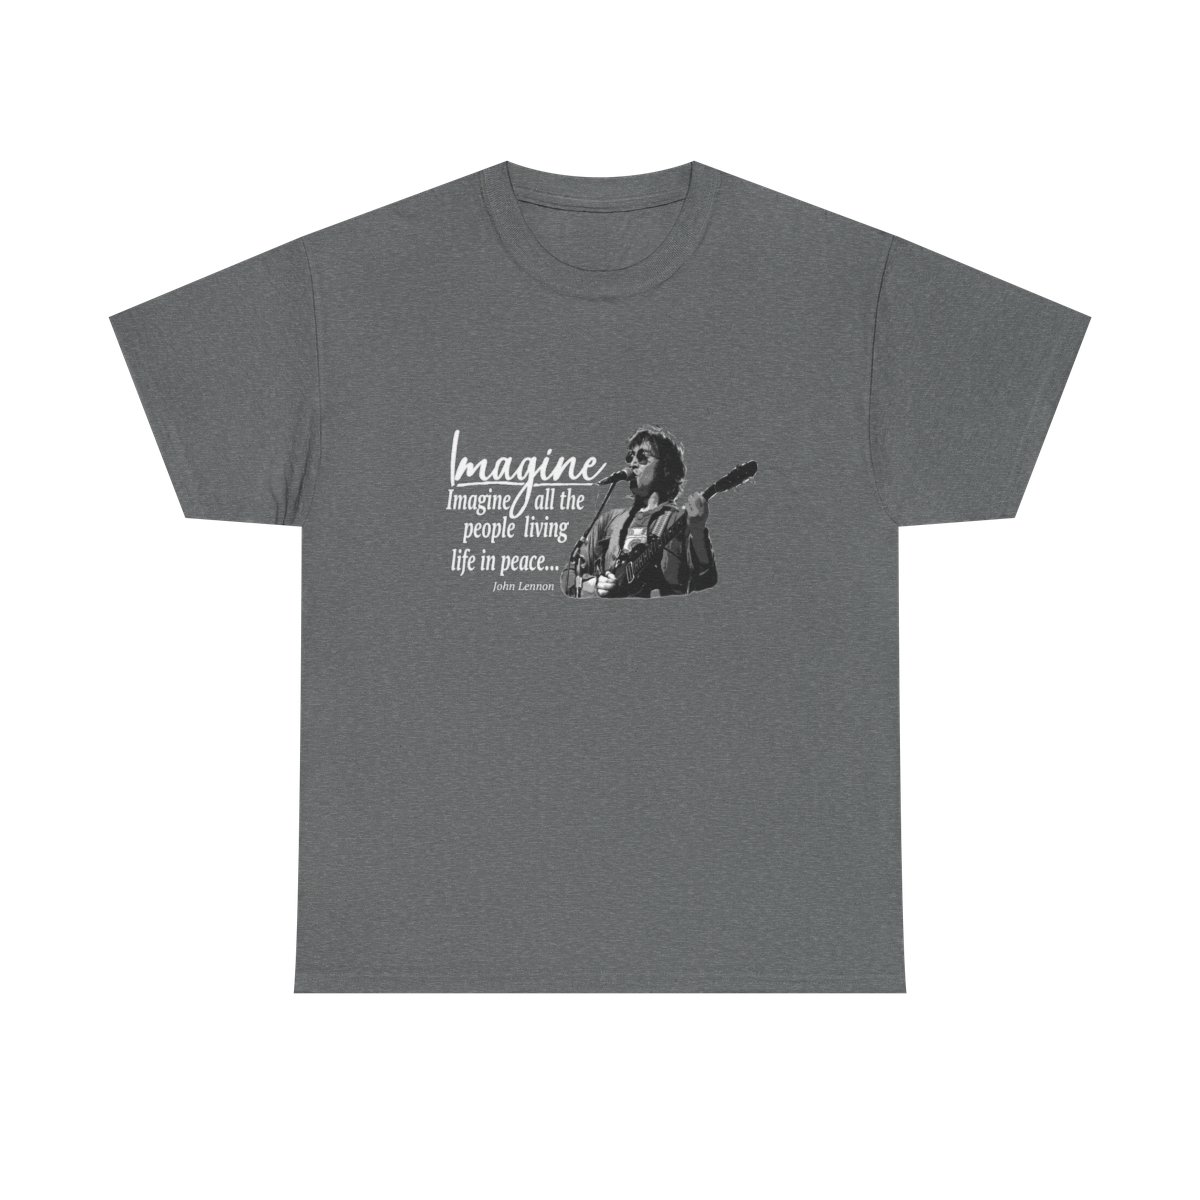 John Lennon's Imagine on a Dark Cotton T-shirt product thumbnail image